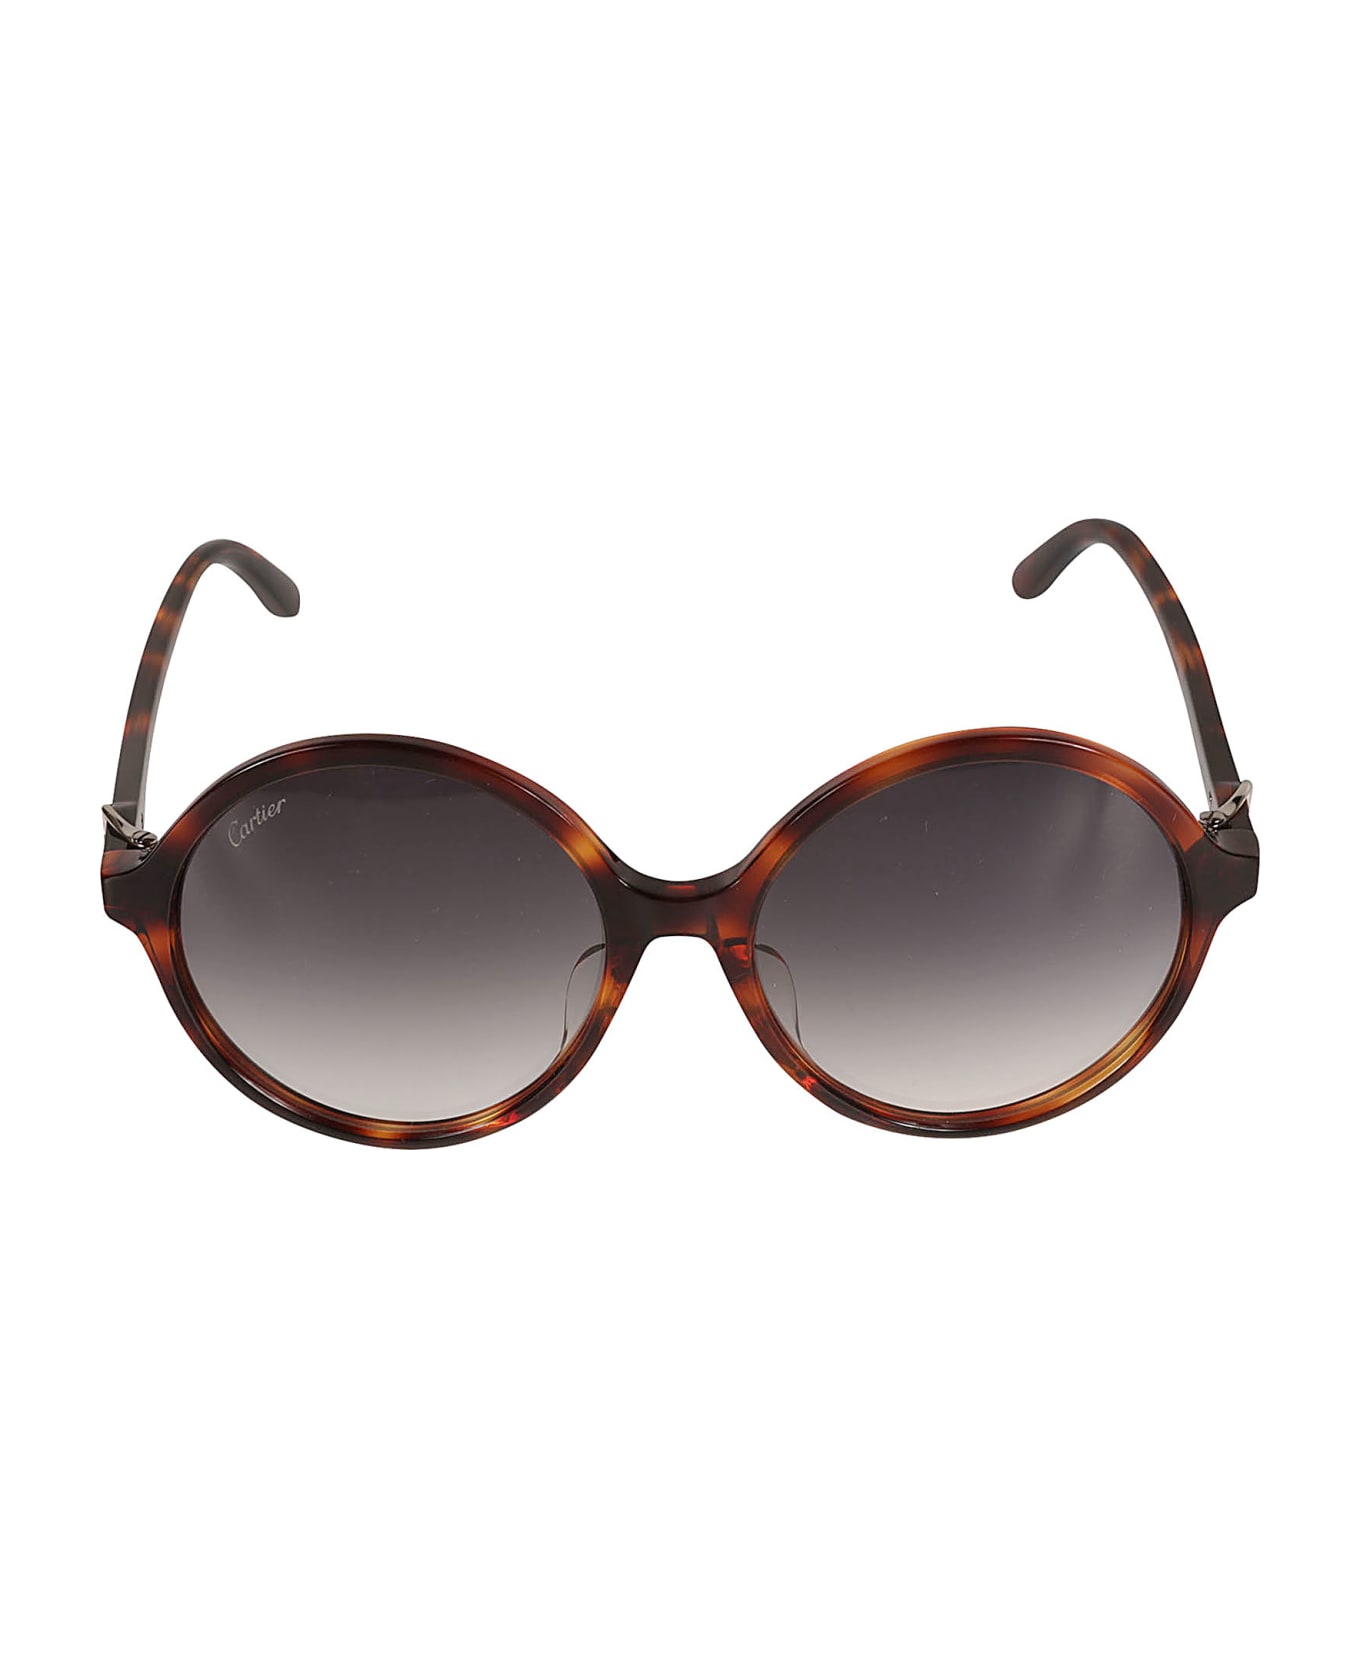 Cartier Eyewear Round Frame Logo Sunglasses - 003 havana havana grey